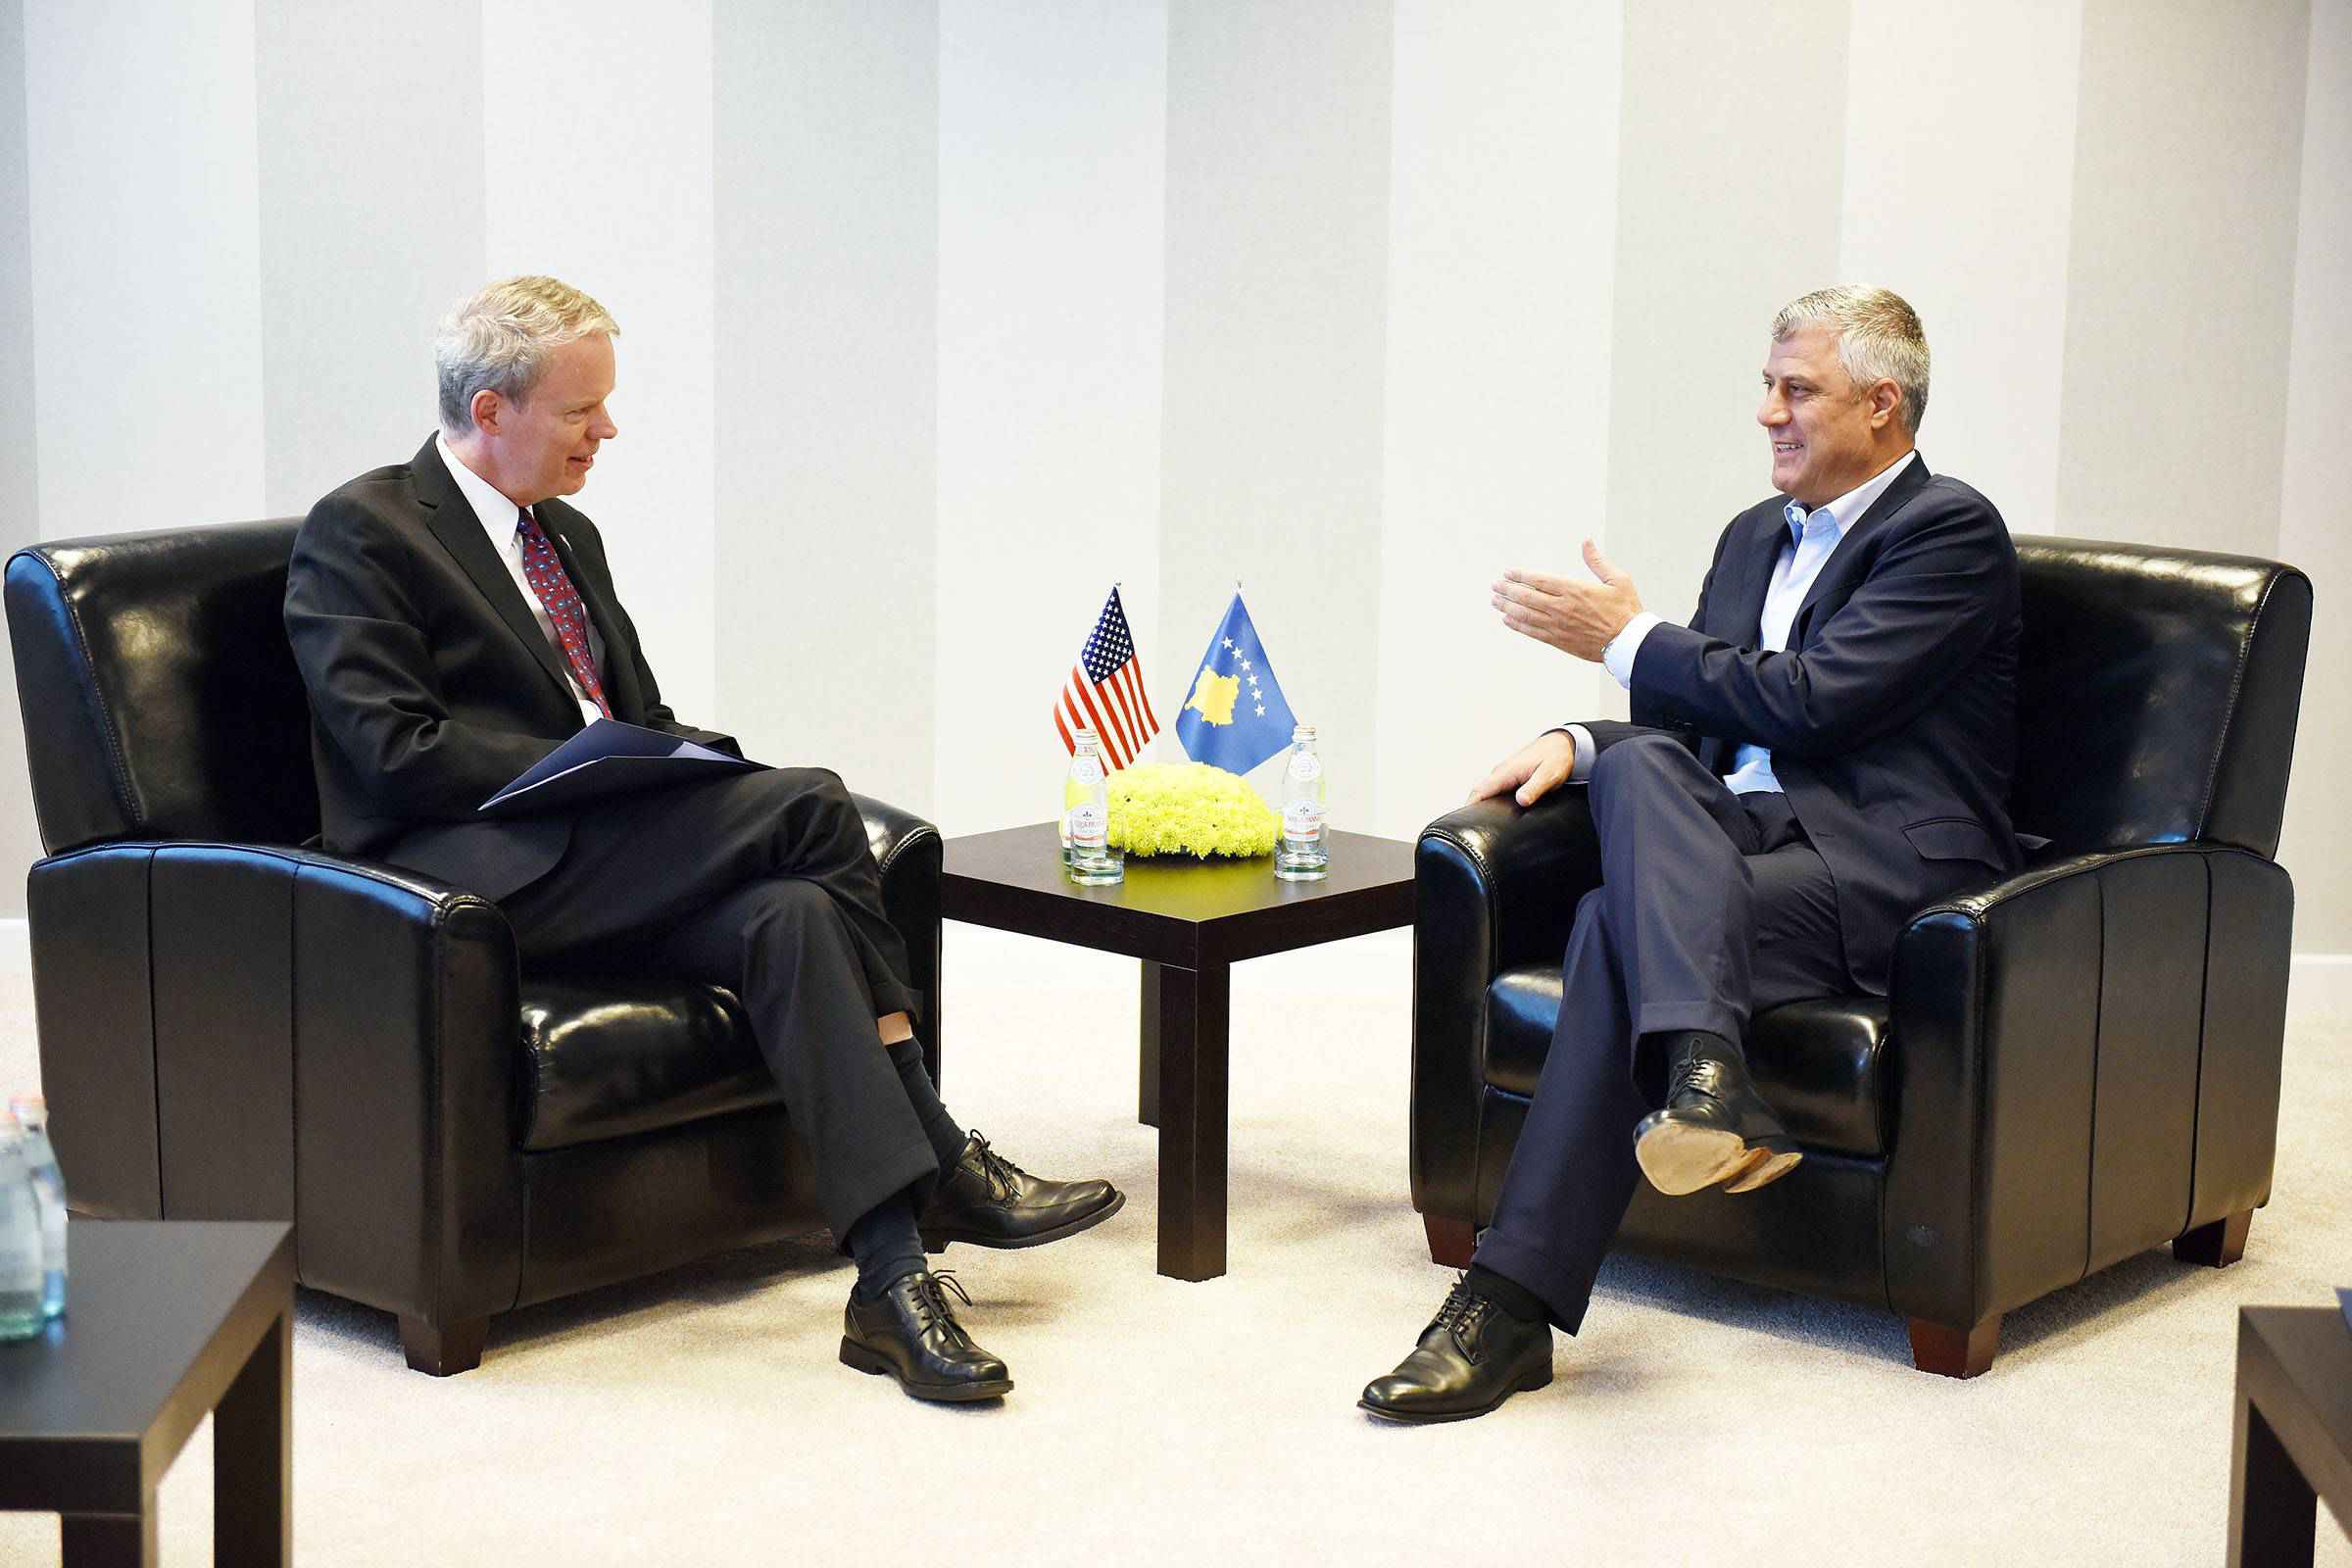  Delawie zotohet që të vazhdojë bashkëpunimin e mirë me Kosovën